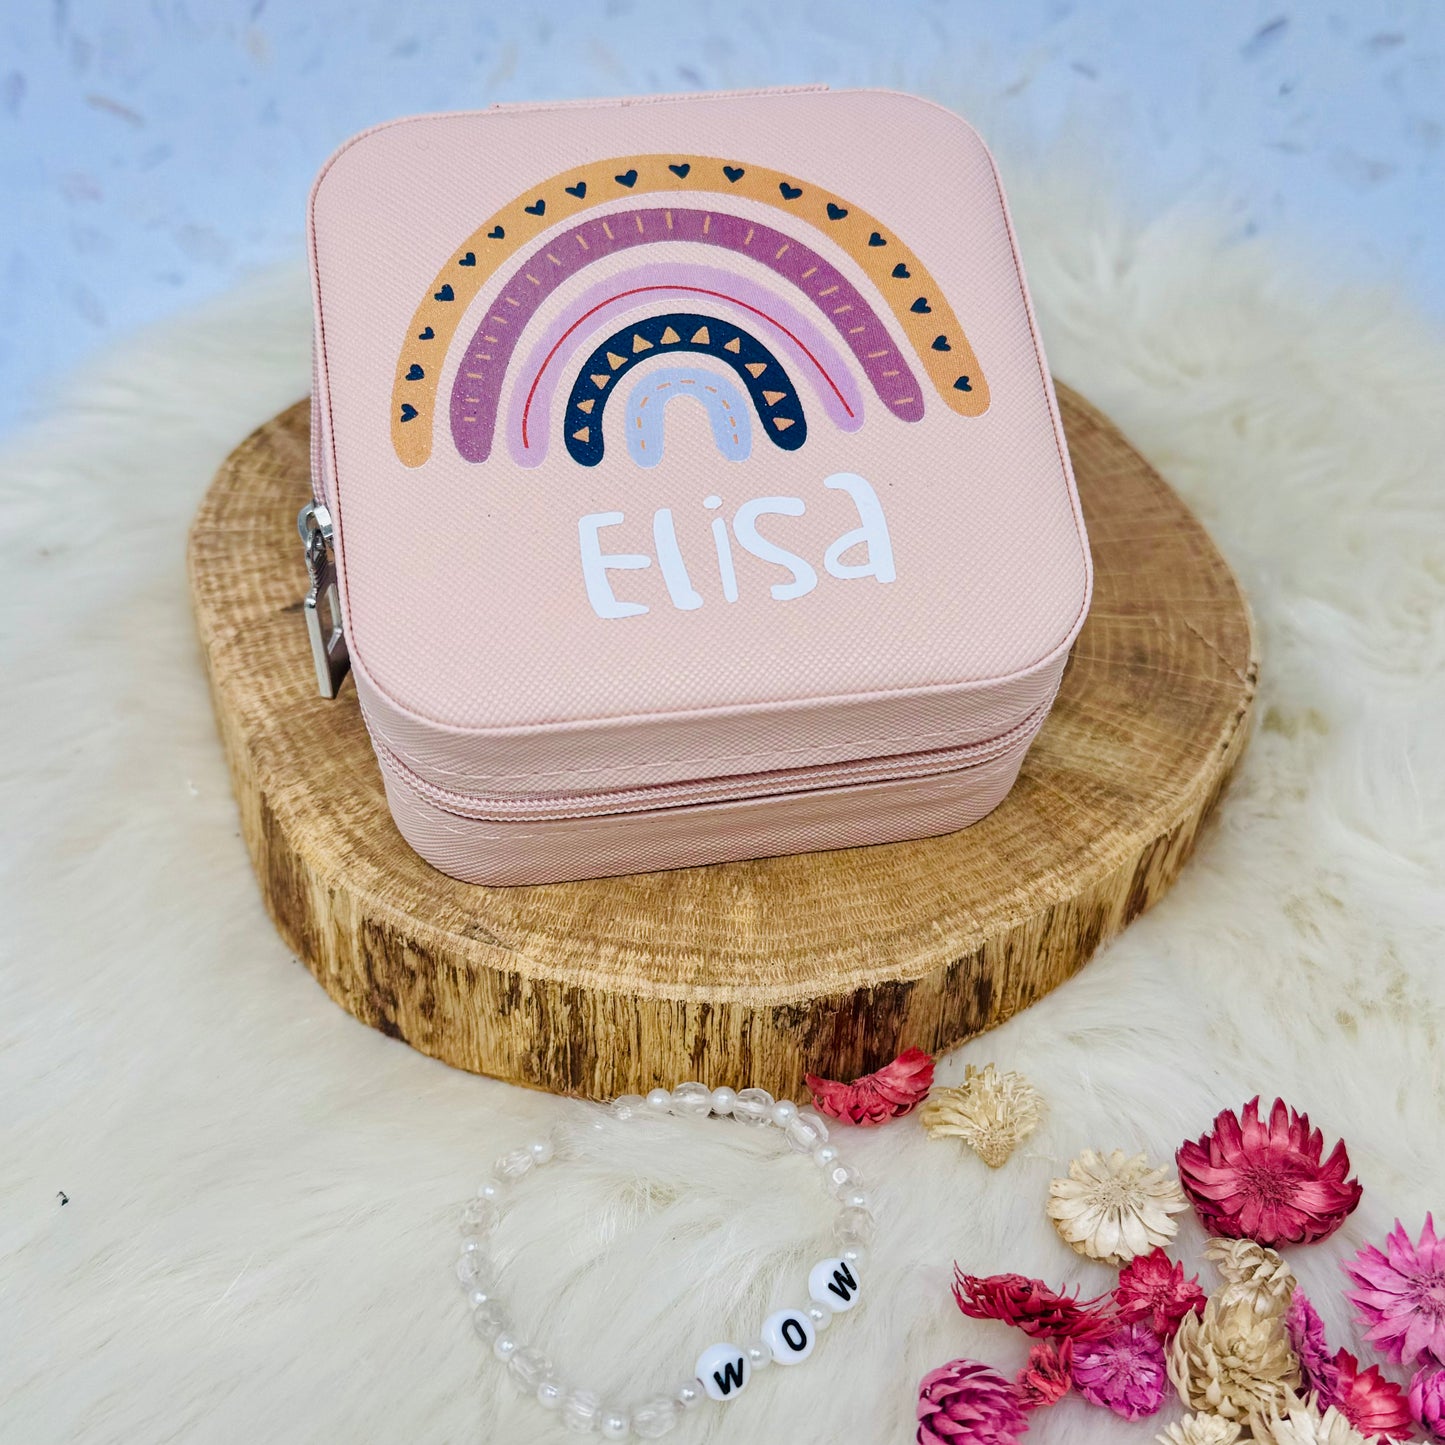 Schmuckaufbewahrung Mädchen - rosa - personalisiert mit Namen und Regenbogen- Geschenk Kommunion Einschulung Geburtstag - Reiseetui